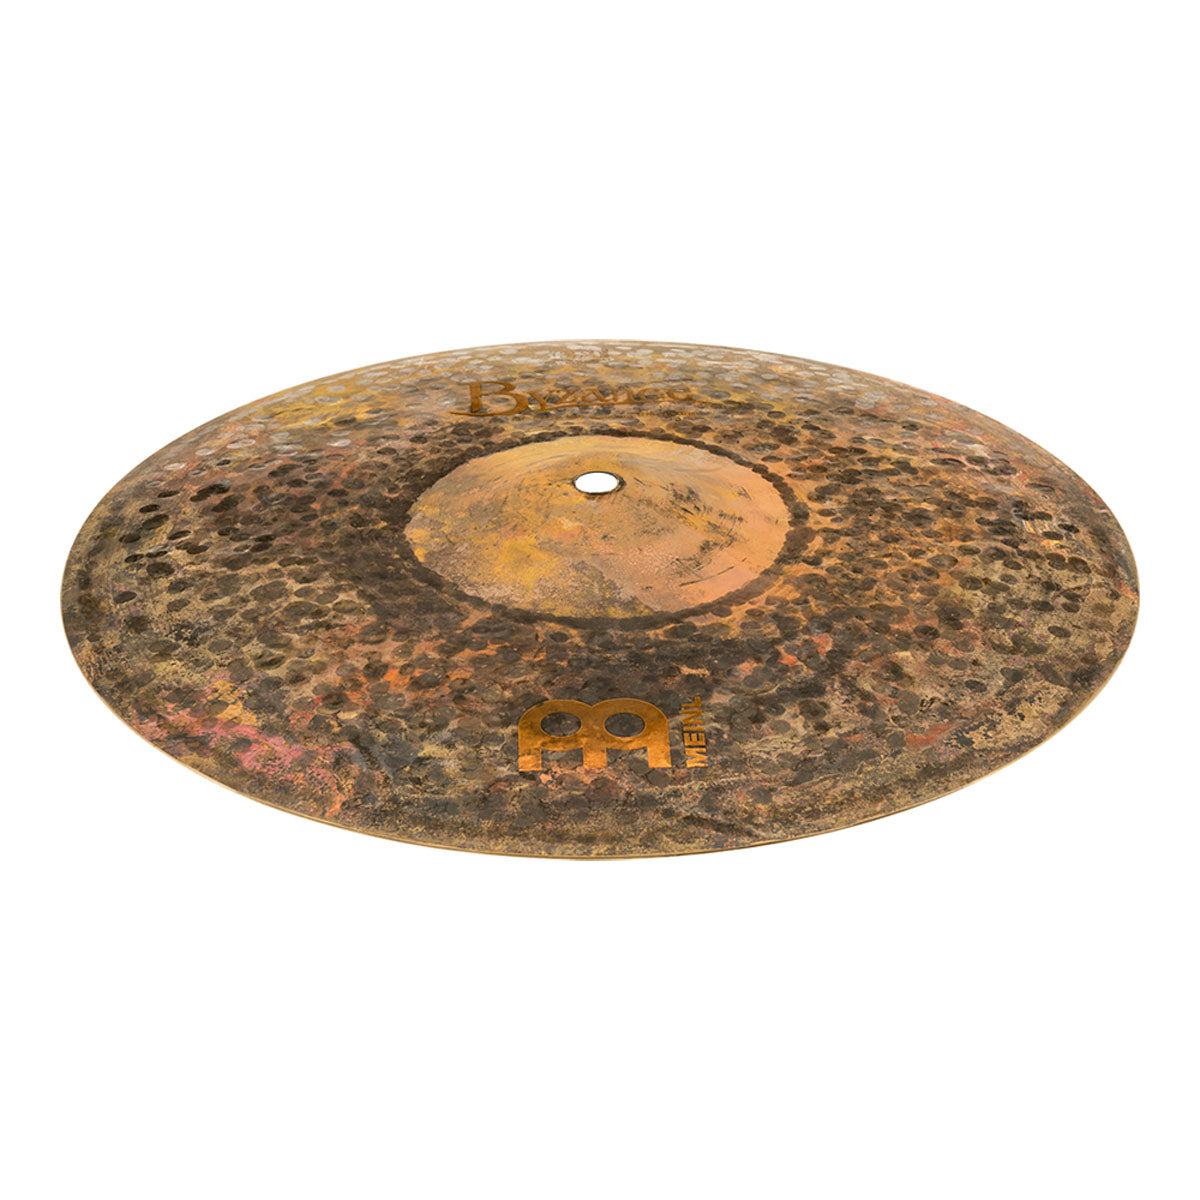 Meinl Byzance Extra Dry 13" Medium Hi-Hat Cymbal